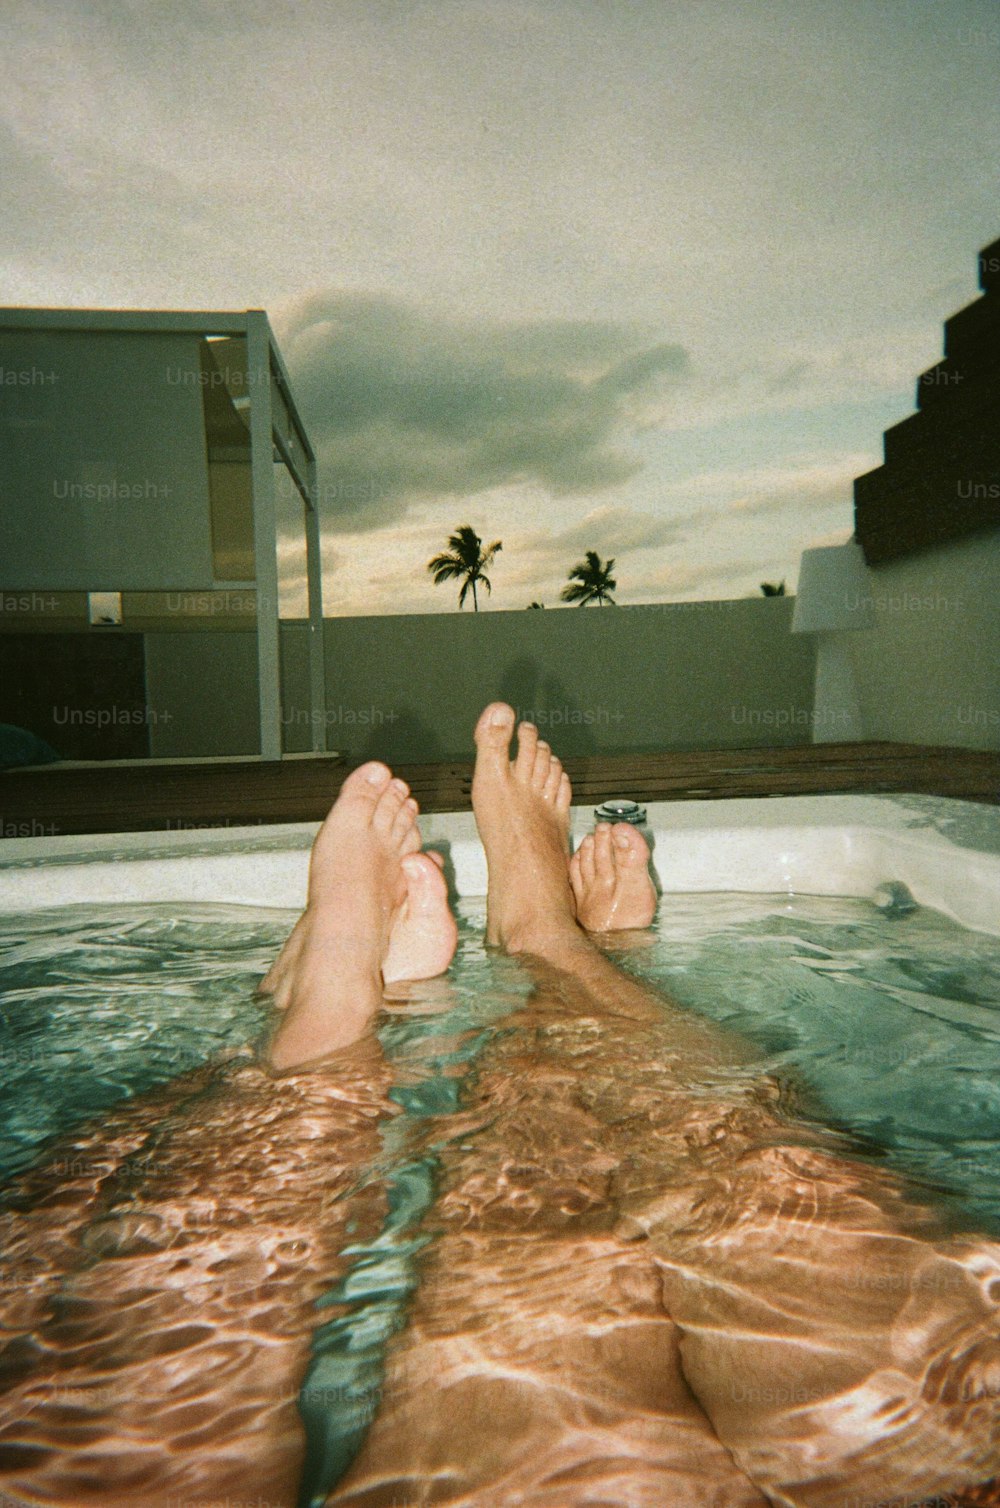 une personne allongée dans un bain à remous, les pieds dans l’eau